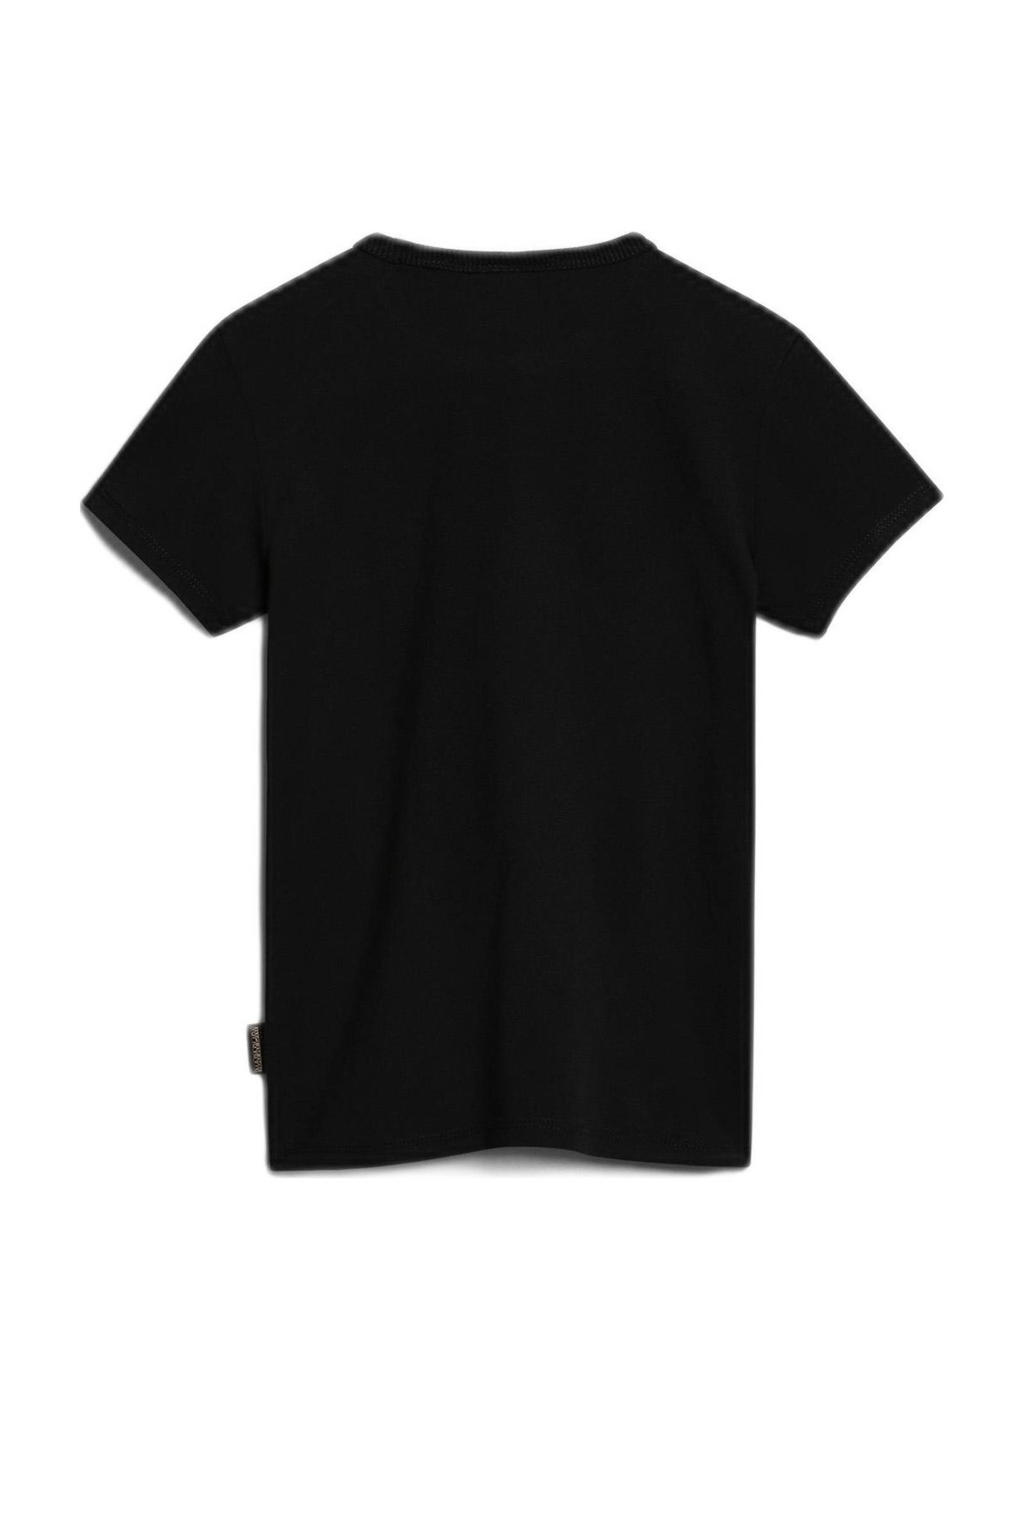 Zwarte jongens Napapijri T-shirt van duurzaam katoen met logo dessin, korte mouwen en ronde hals